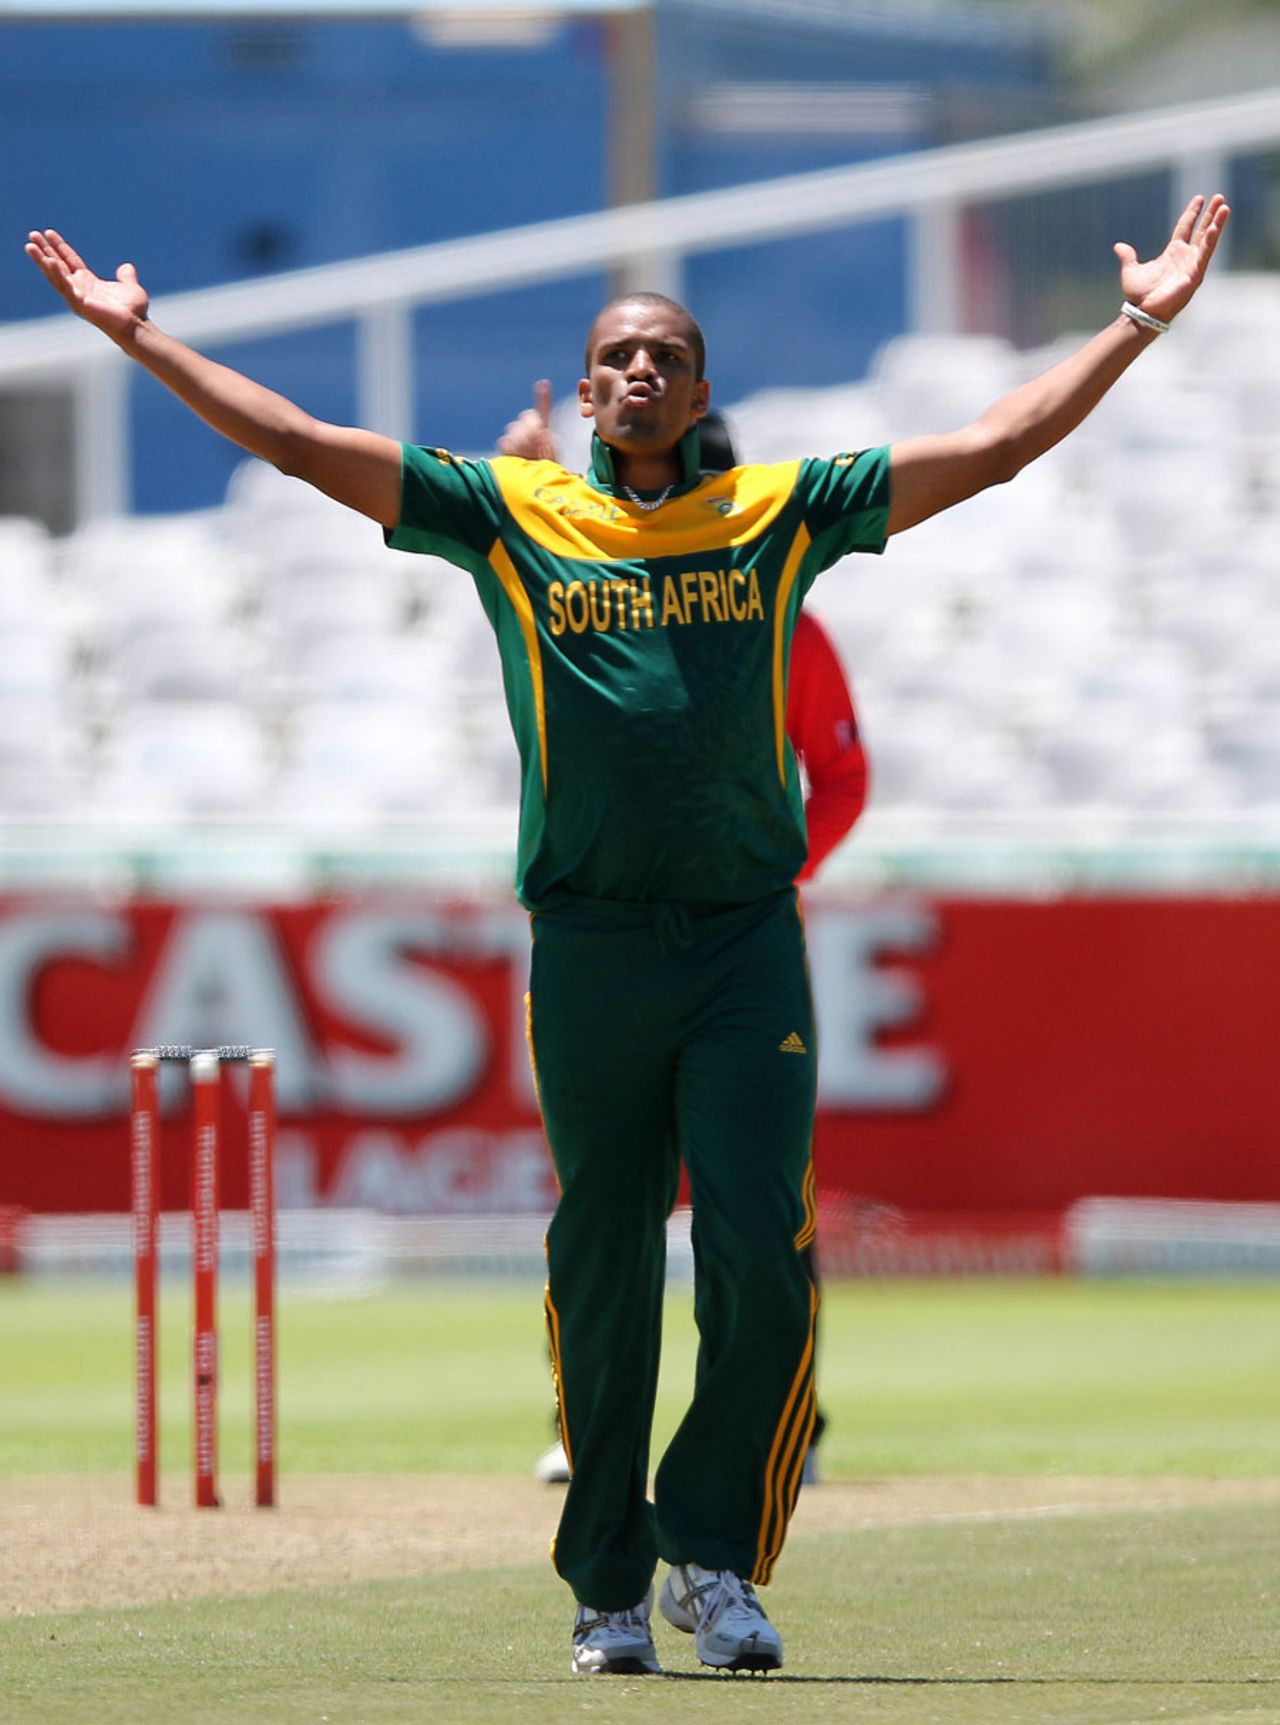 Vernon Philander celebrates after dismissing Umar Akmal, South Africa v Pakistan, 1st ODI, Cape Town, November 24, 2013